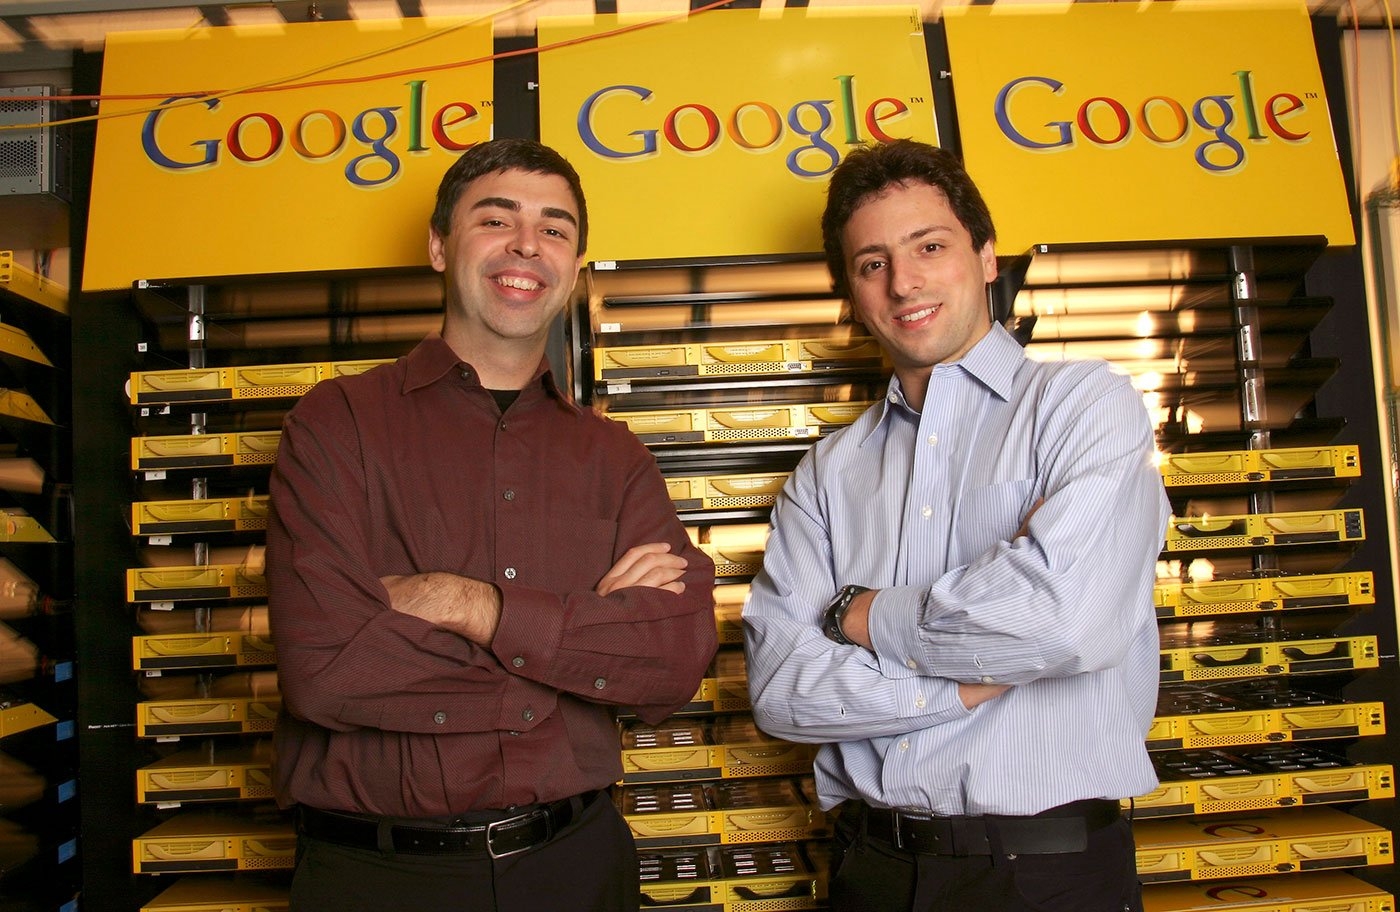 Ларри Пейдж и Сергей Брин в штаб-квартире Google в Калифорнии, 2003. Фото: gettyimages.ru